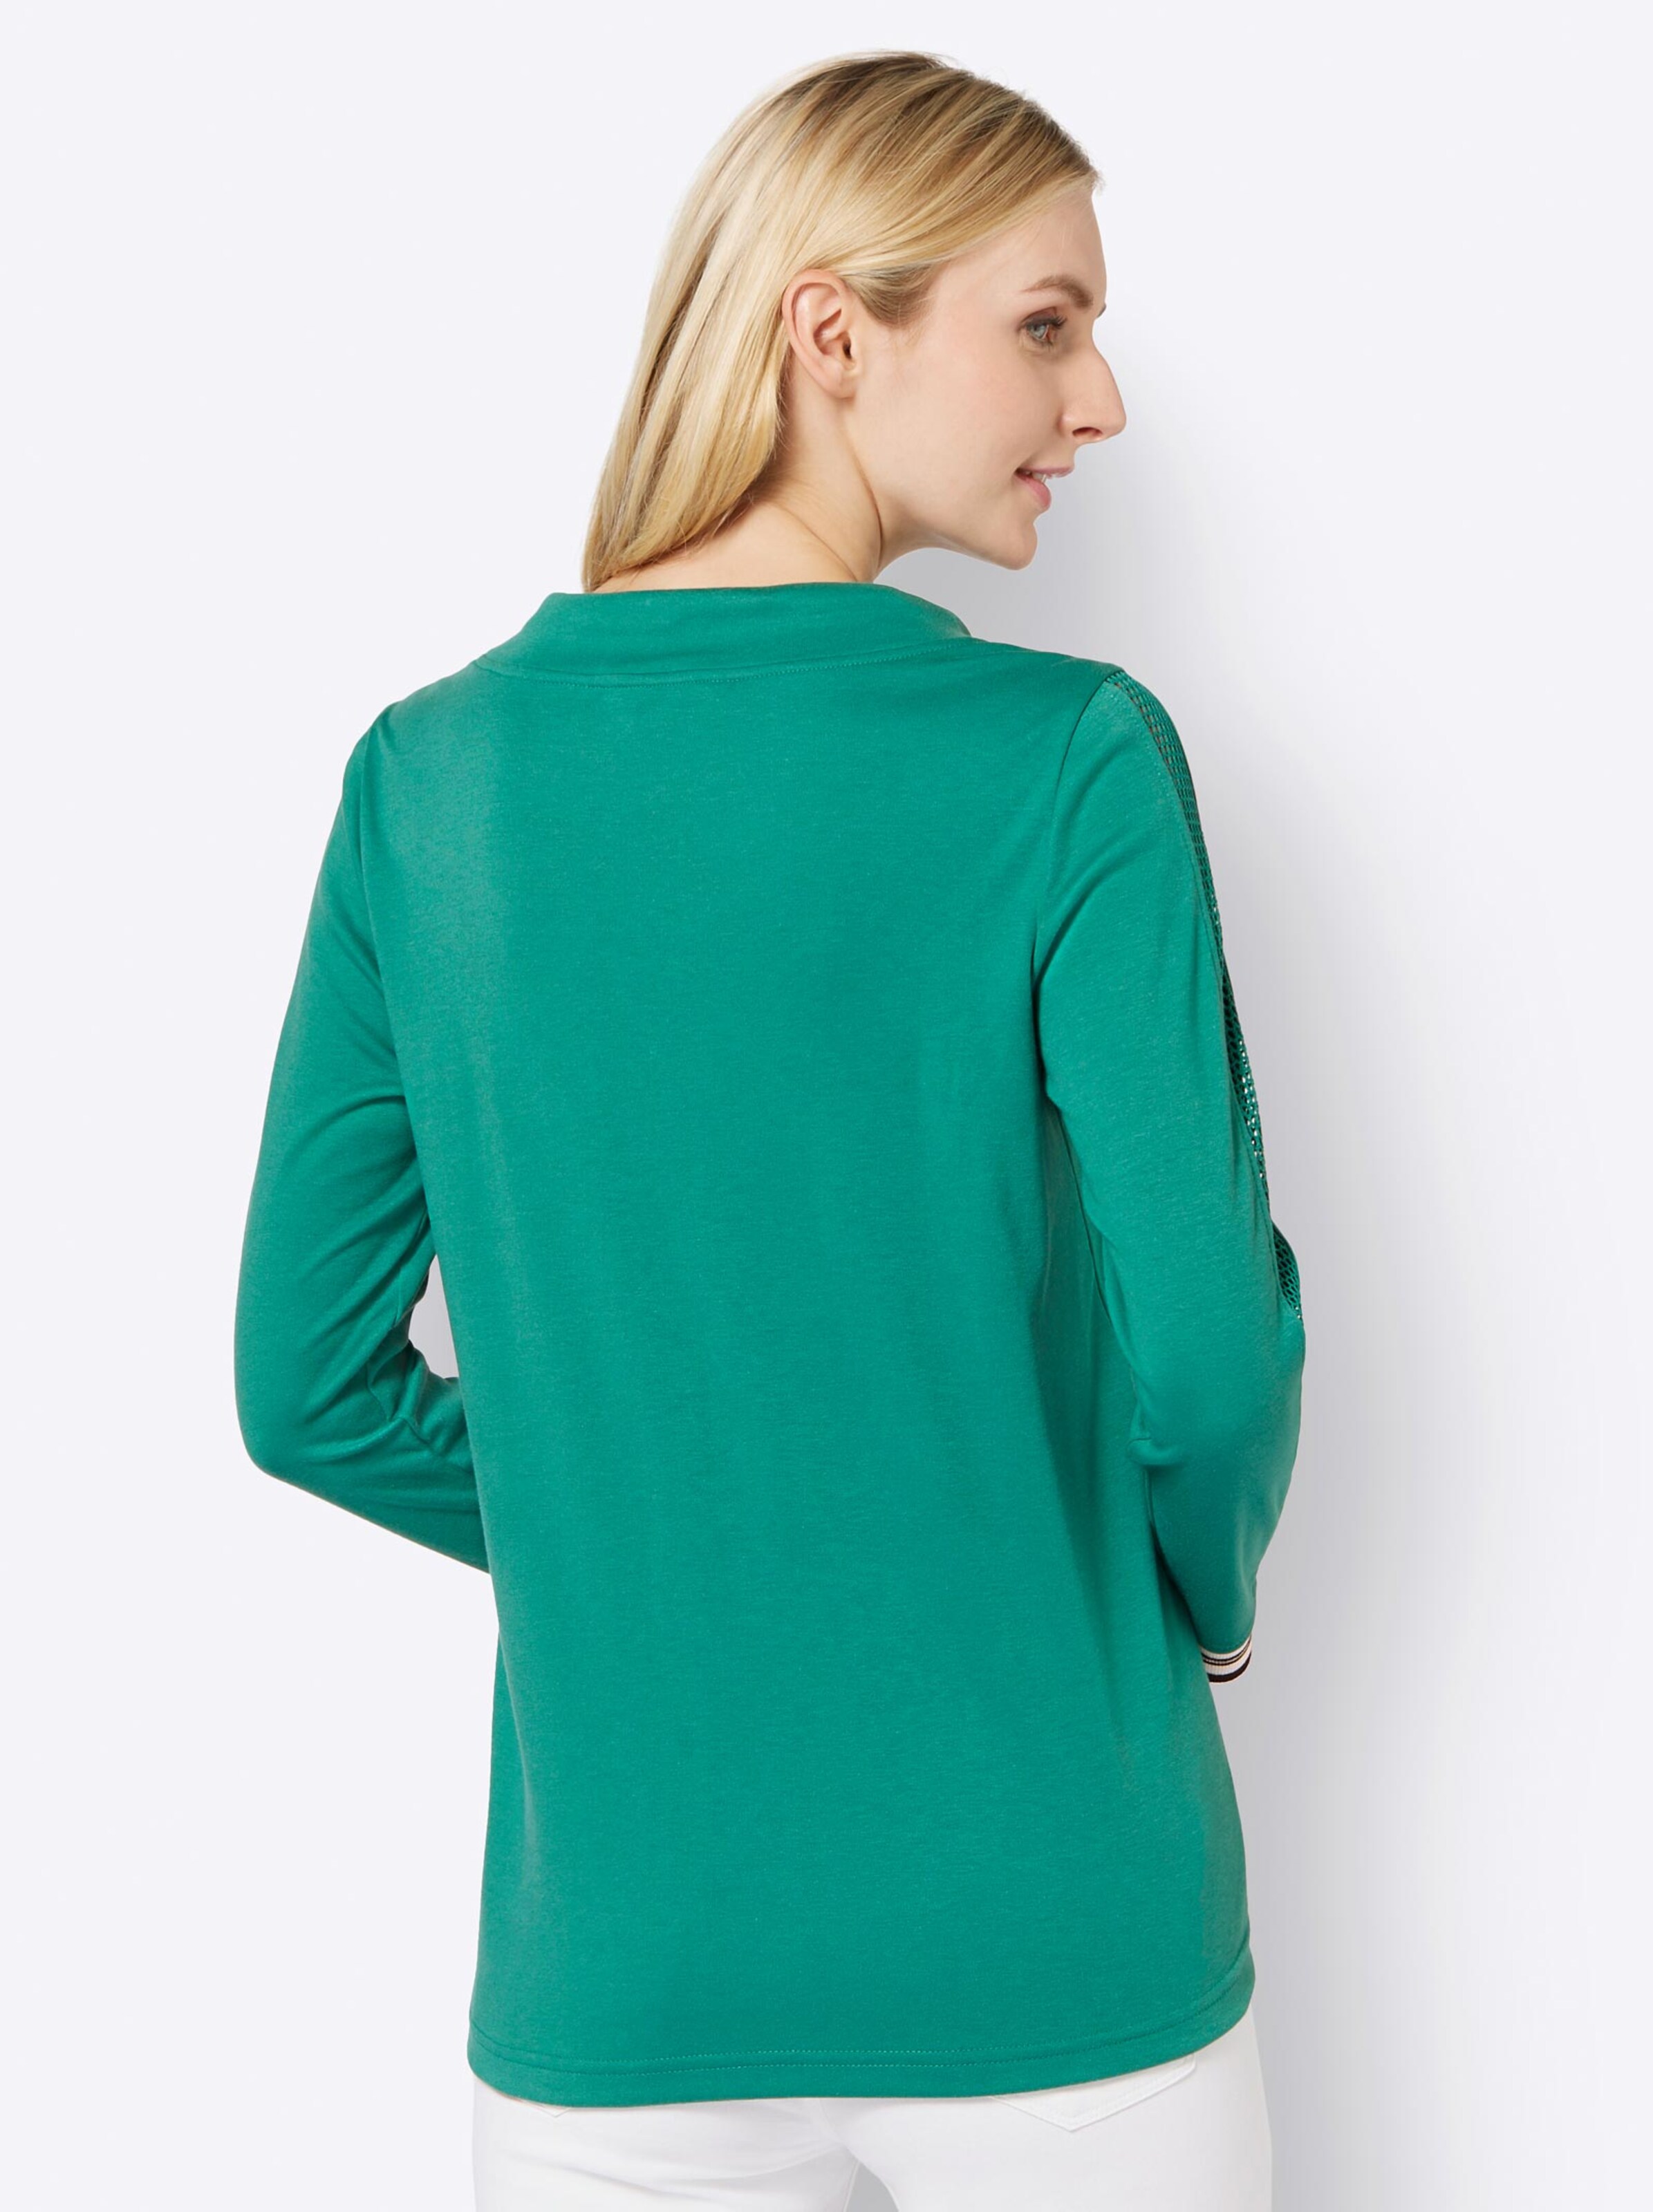 Damenmode Shirts Sweatshirt in smaragd 